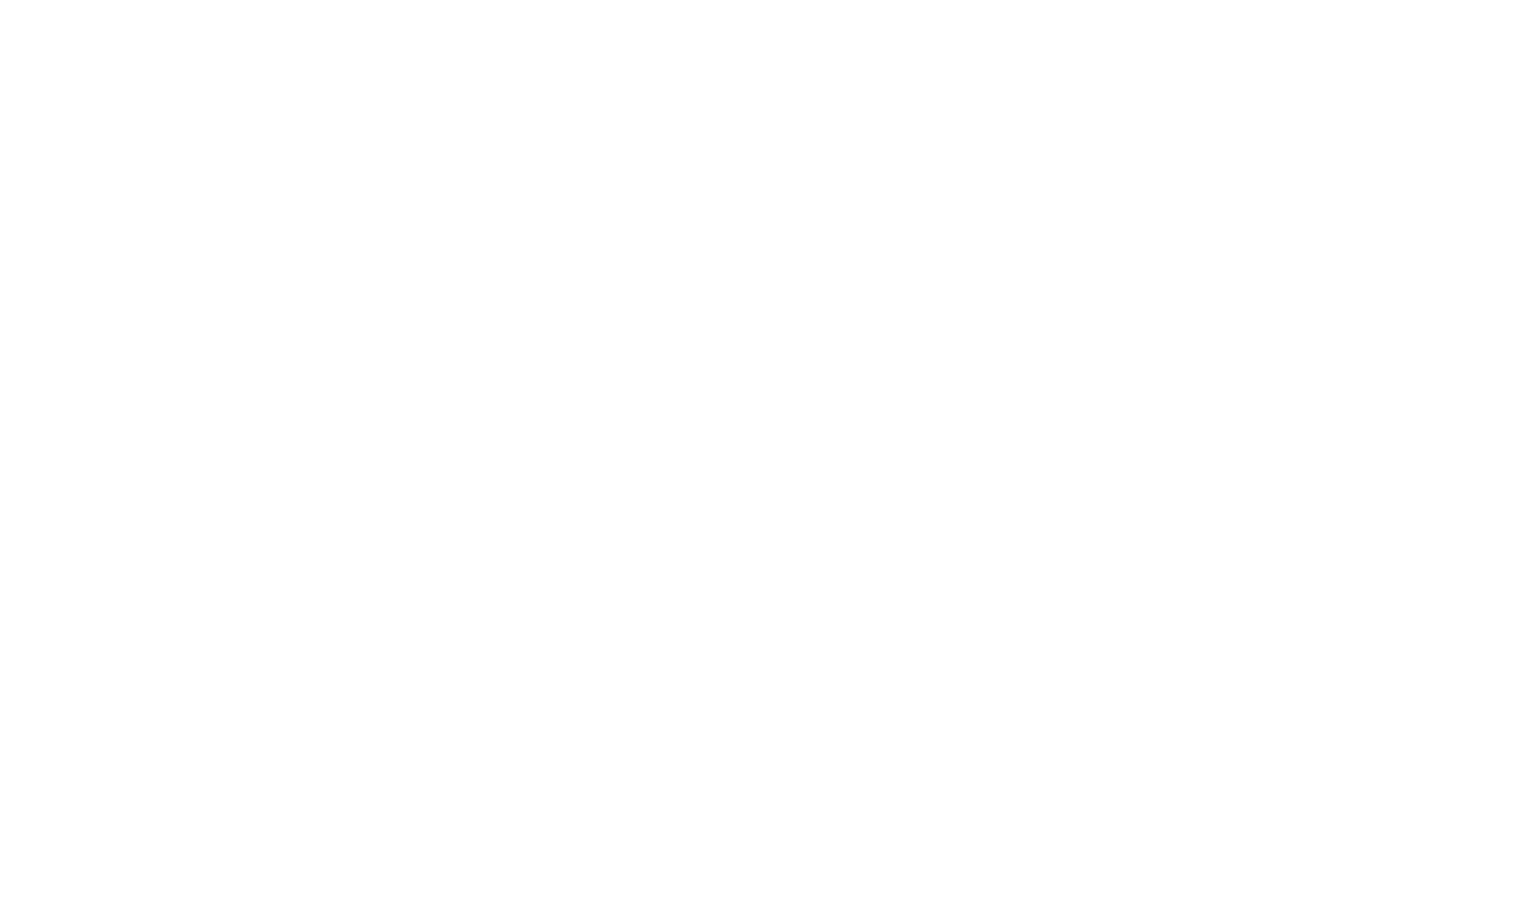 Stockholms Läns Landsting